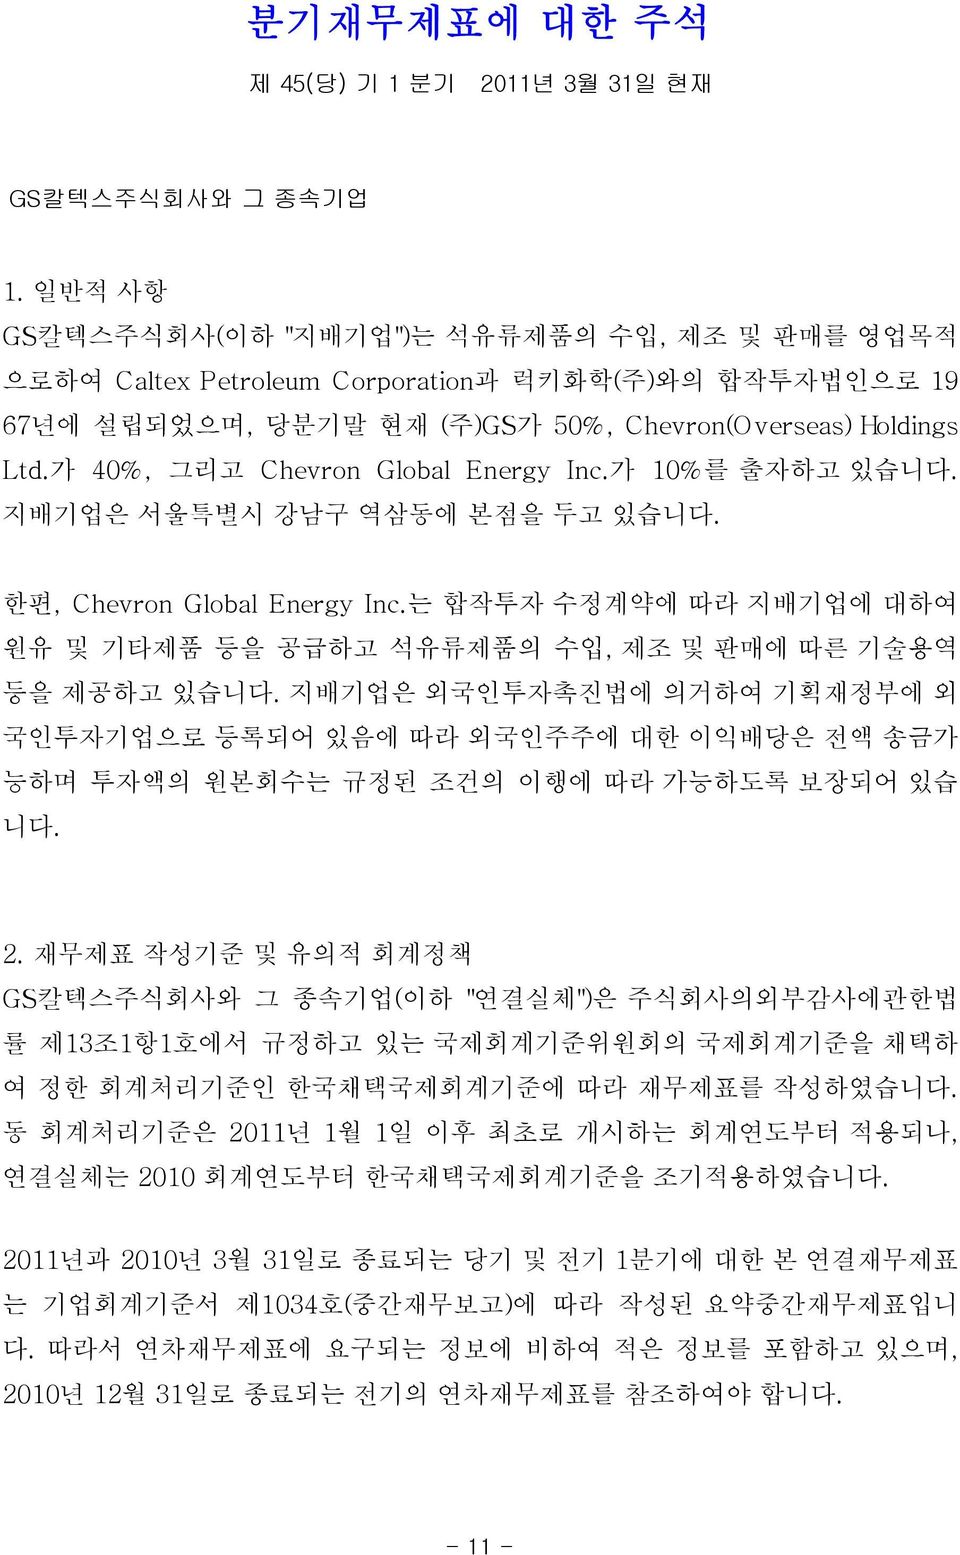 가 40%, 그리고 Chevron Global Energy Inc.가 10%를 출자하고 있습니다. 지배기업은 서울특별시 강남구 역삼동에 본점을 두고 있습니다. 한편, Chevron Global Energy Inc.